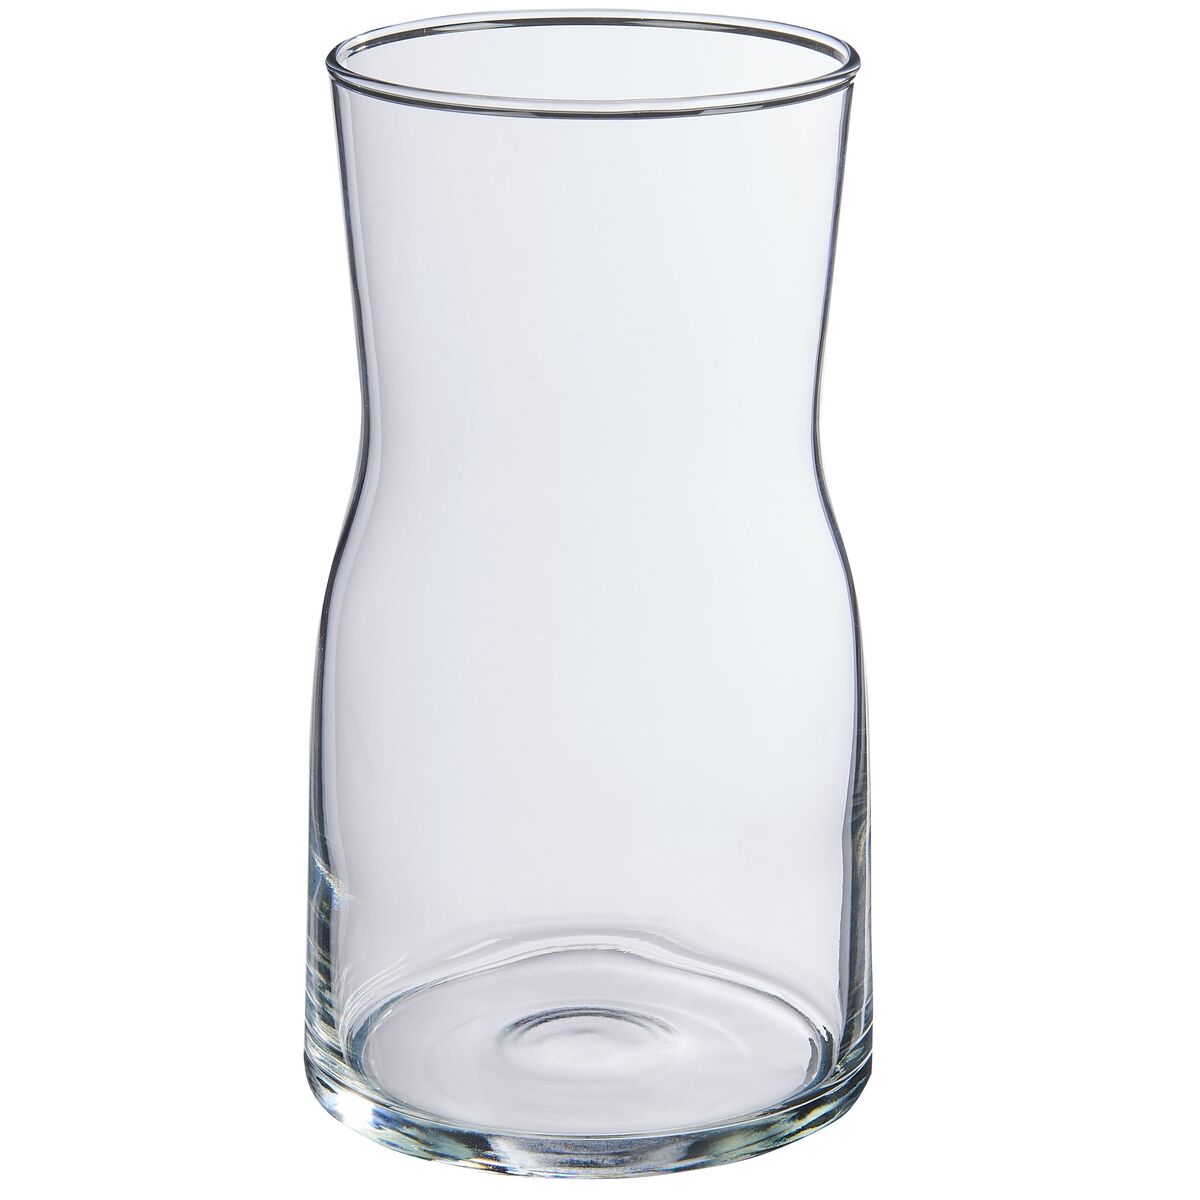 Wazon szklany wys. 17 cm transparentny